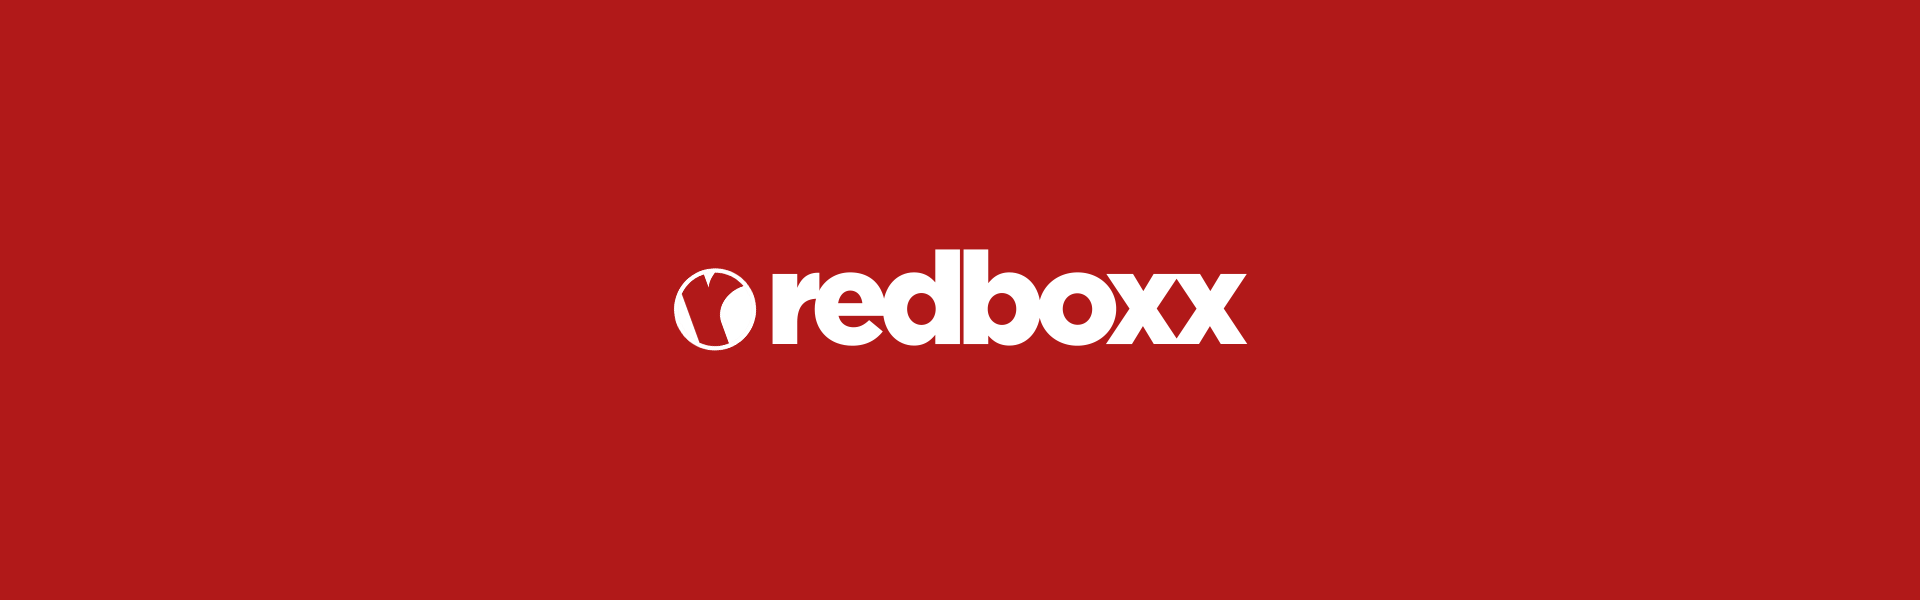 logo-redboxx-video